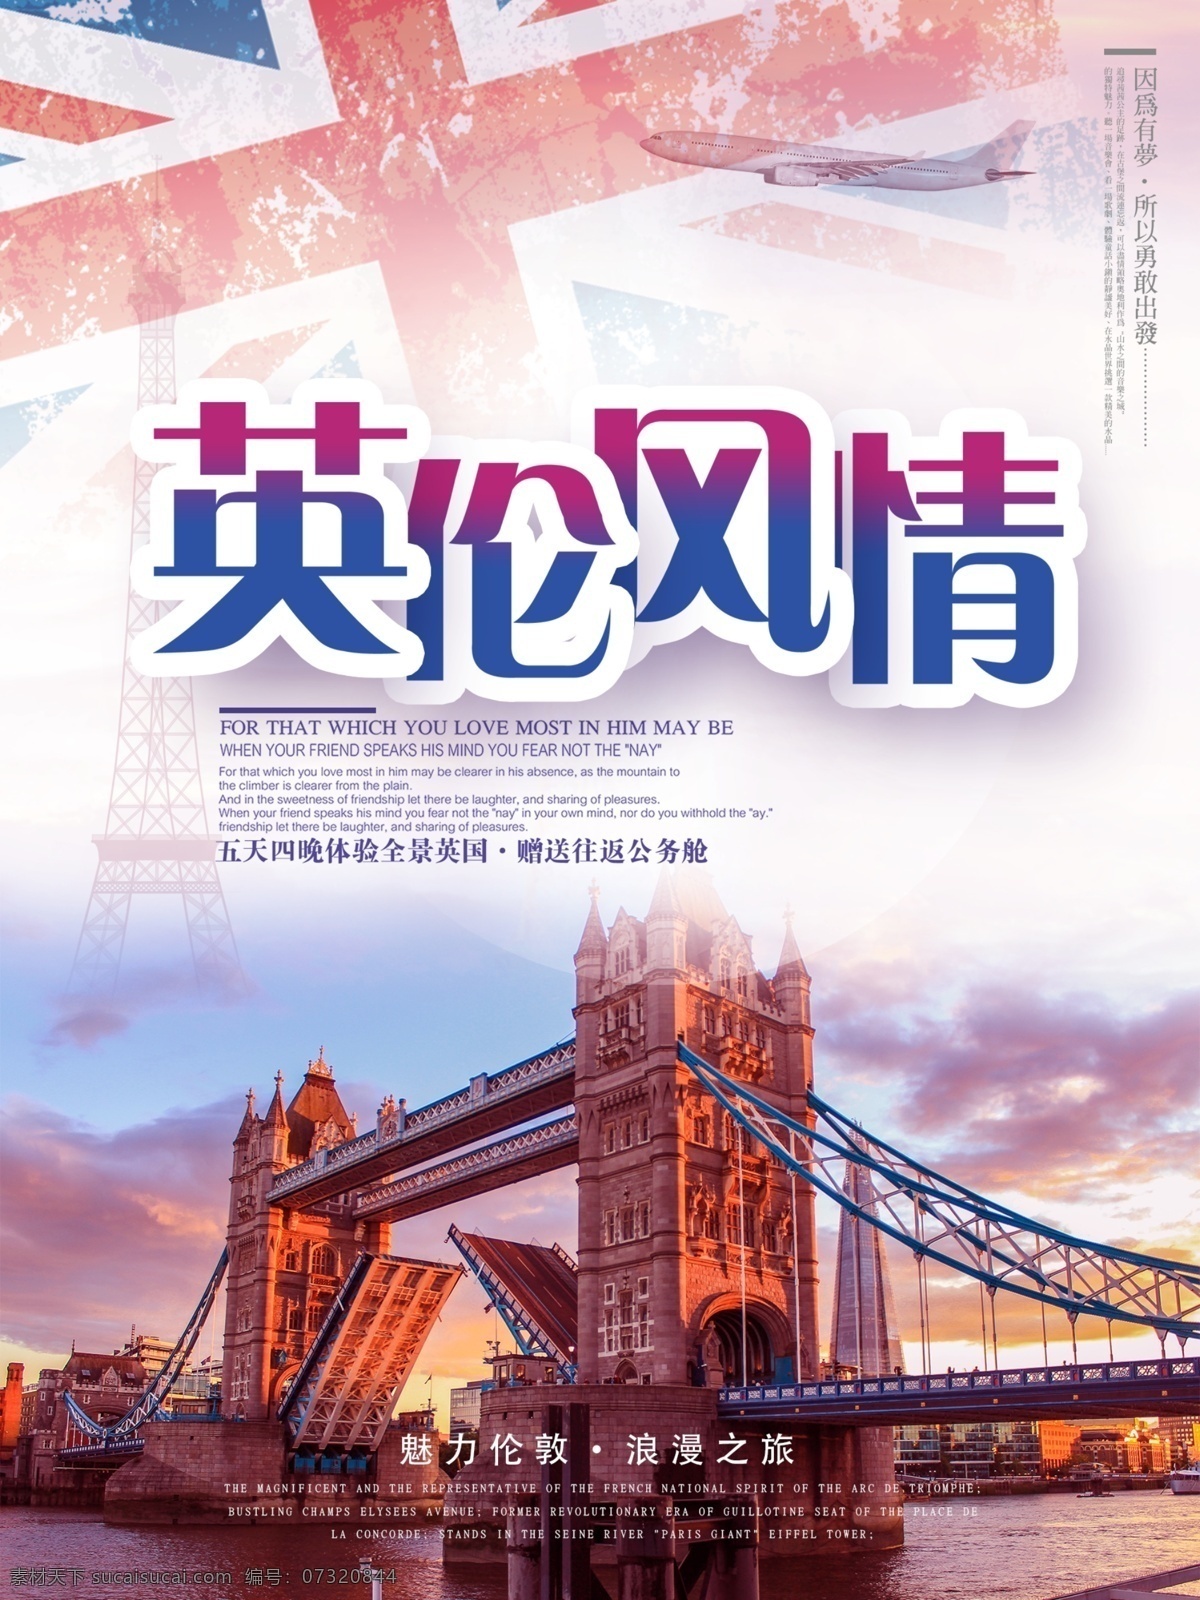 海外 欧洲 英国旅游 免费素材 平面素材 海报模板 欧洲旅游 英国贵族 文艺复兴 游